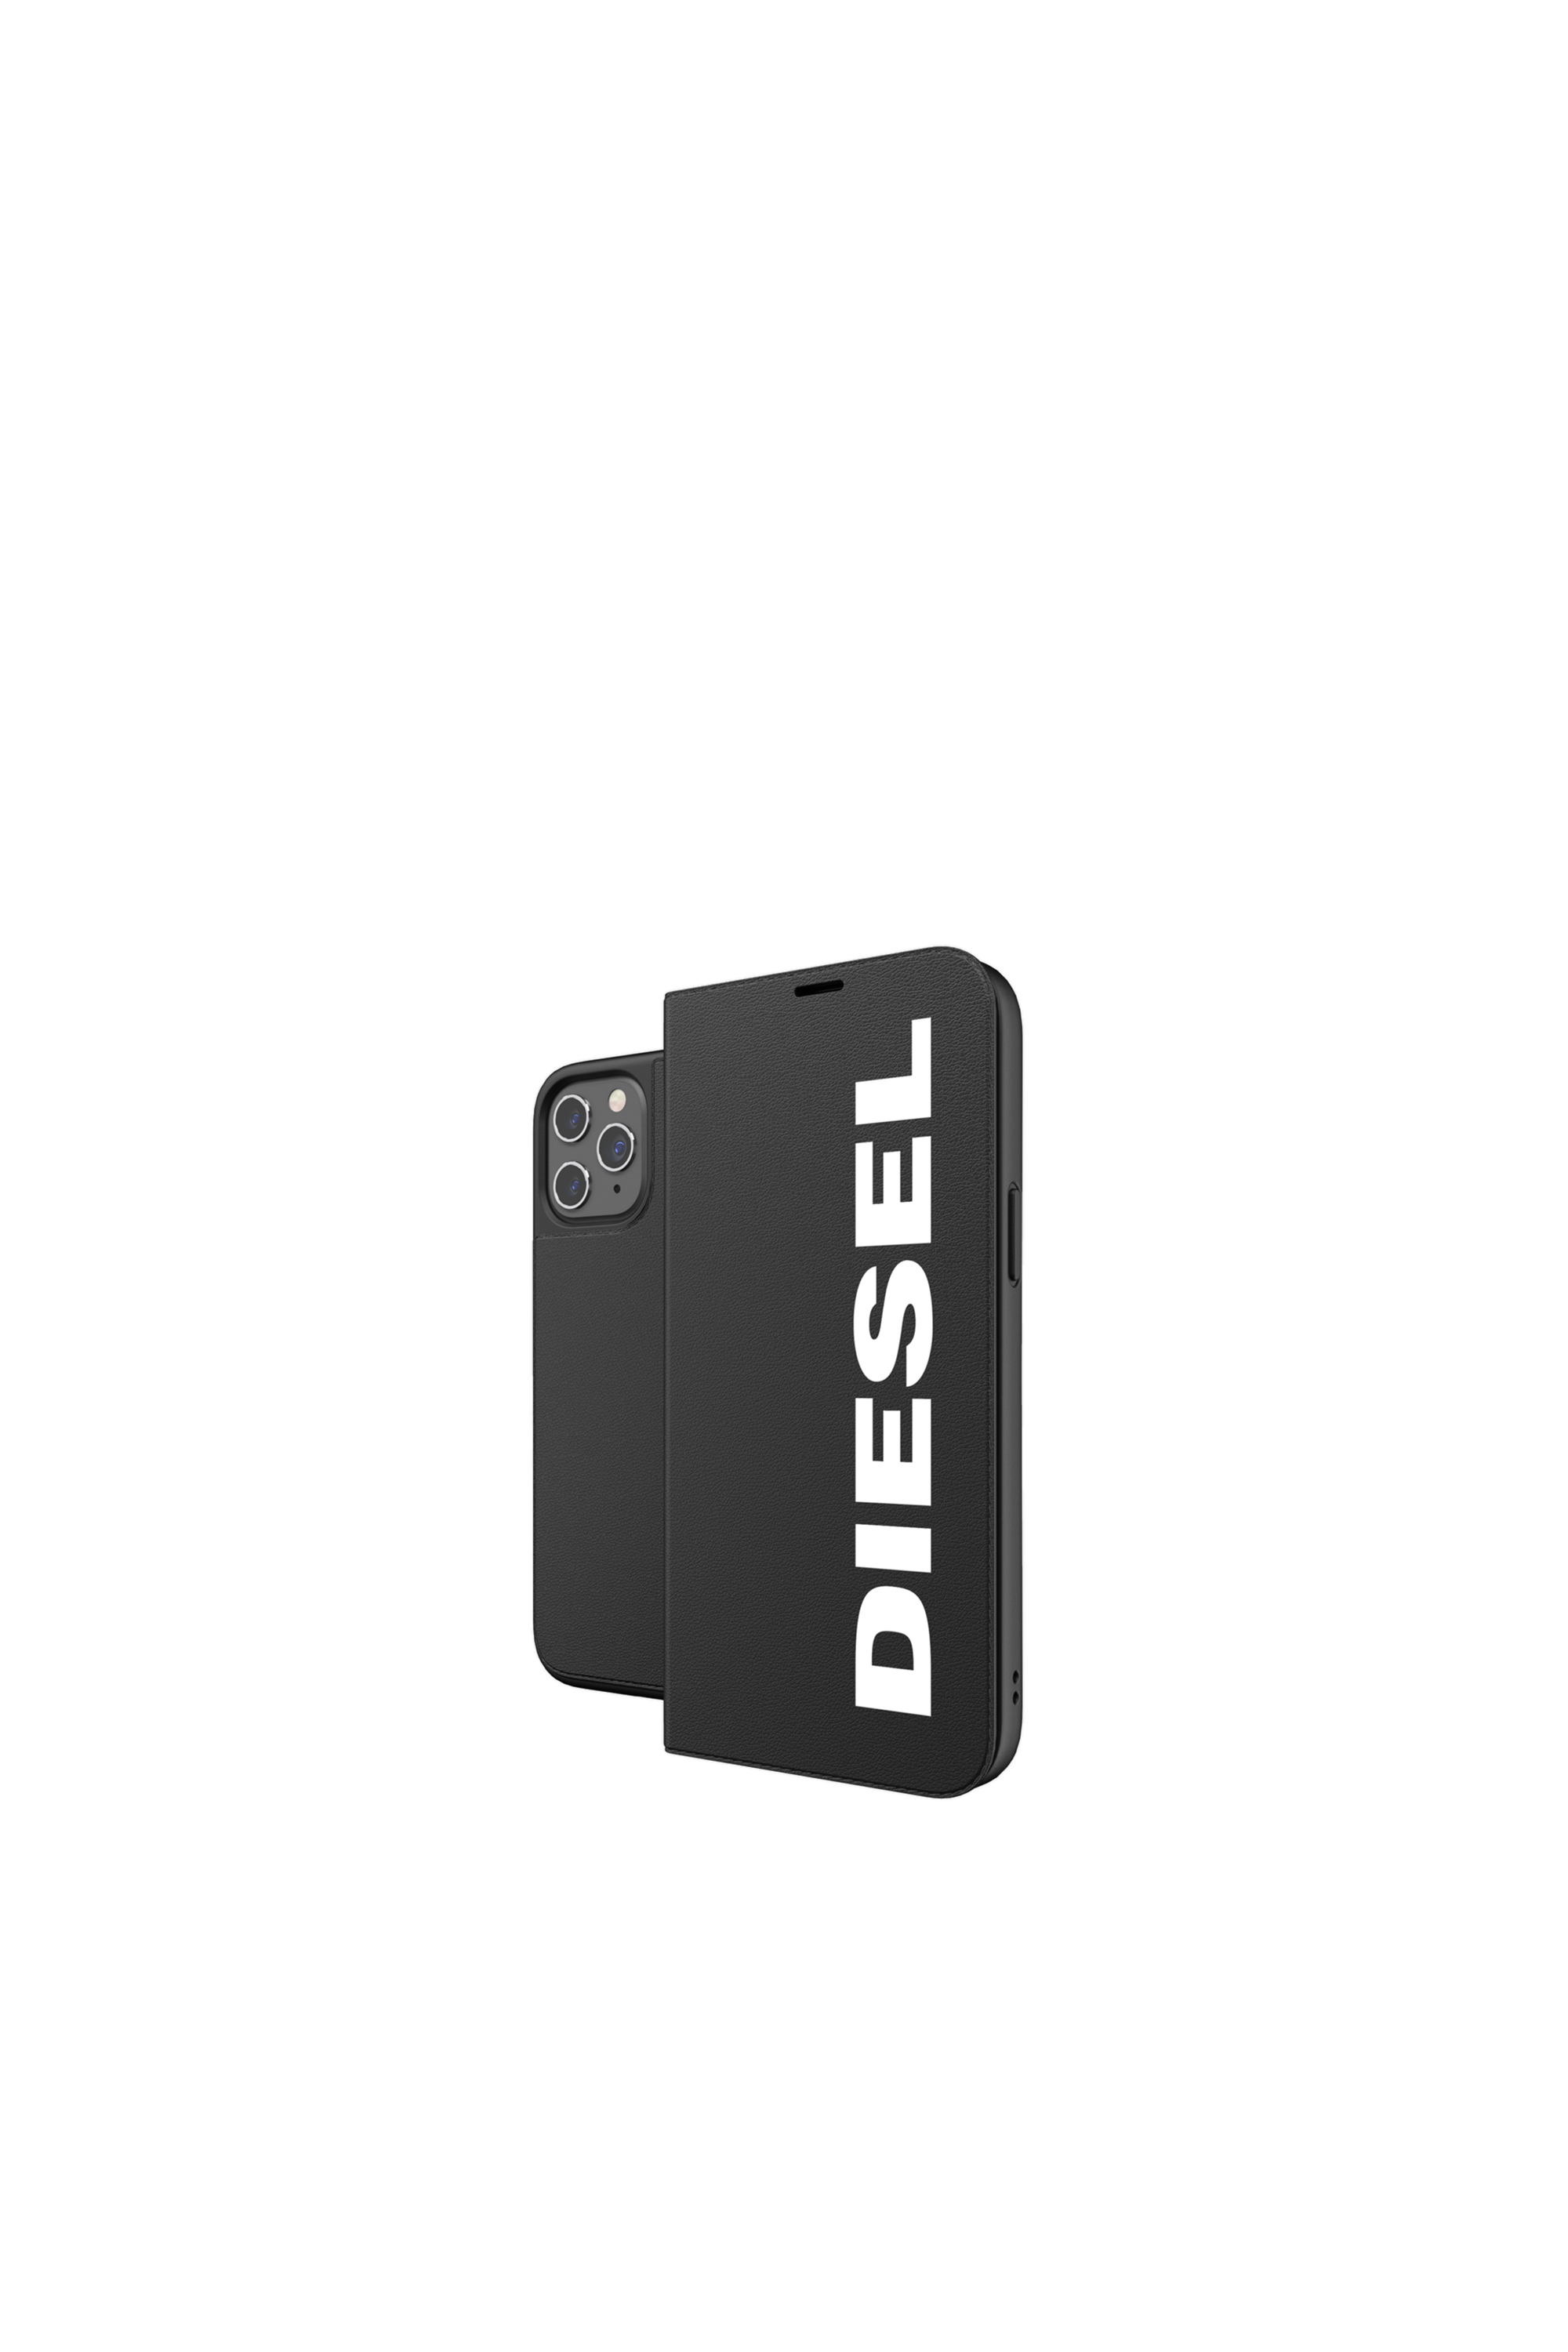 Diesel - 42487, Black - Image 1